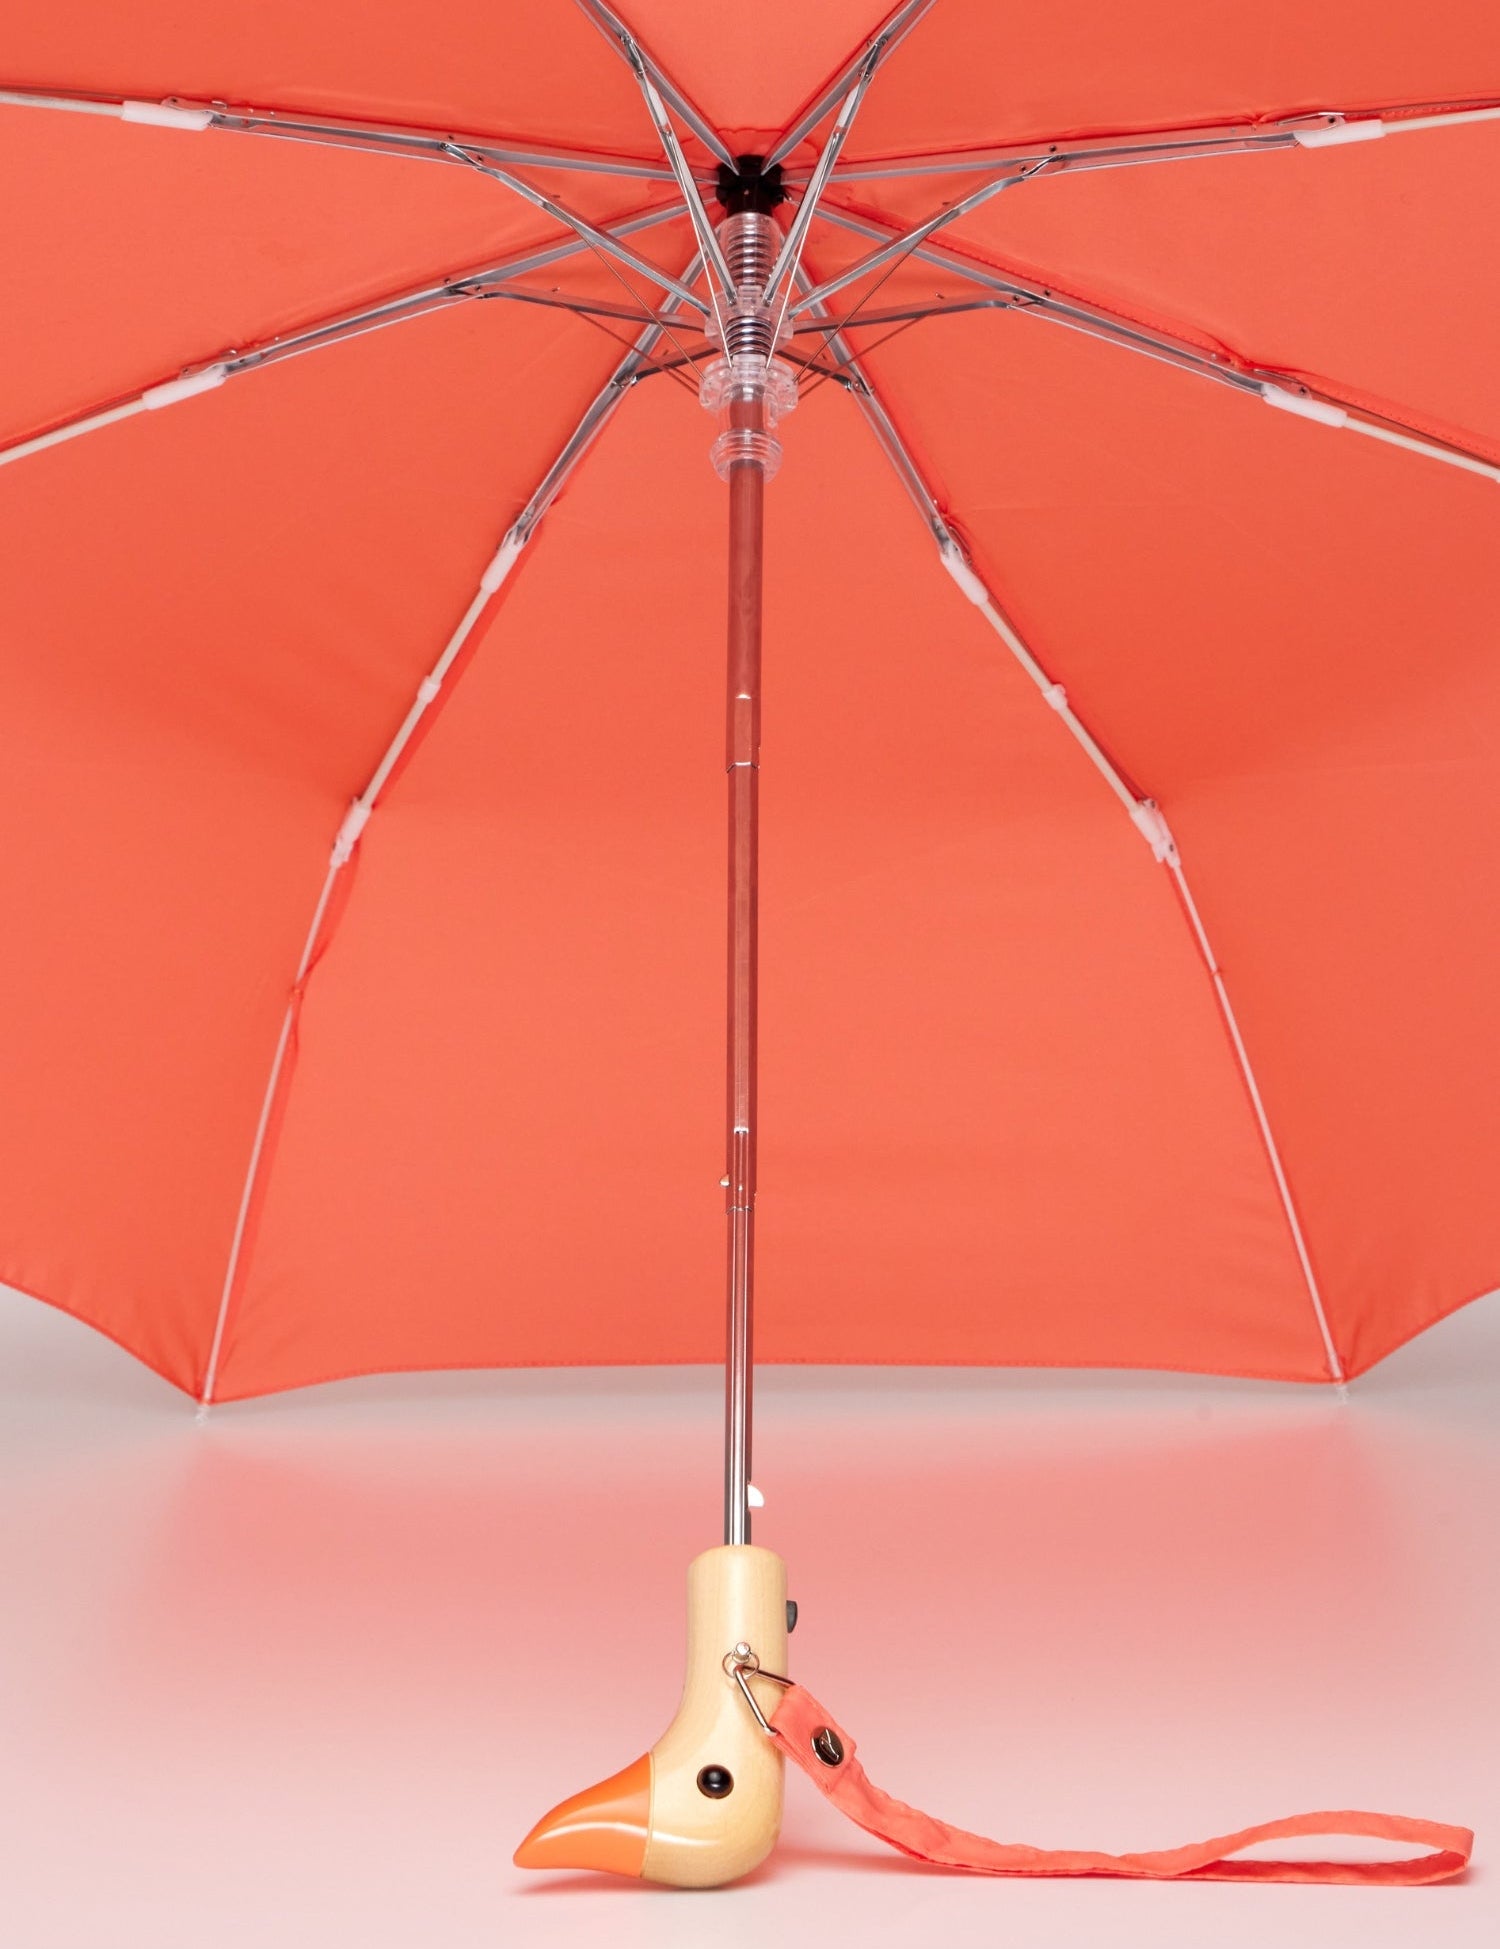 original-duckhead-peach-best-windproof-umbrella-4_48915465-477c-49f6-9843-dce1c9541261.jpg